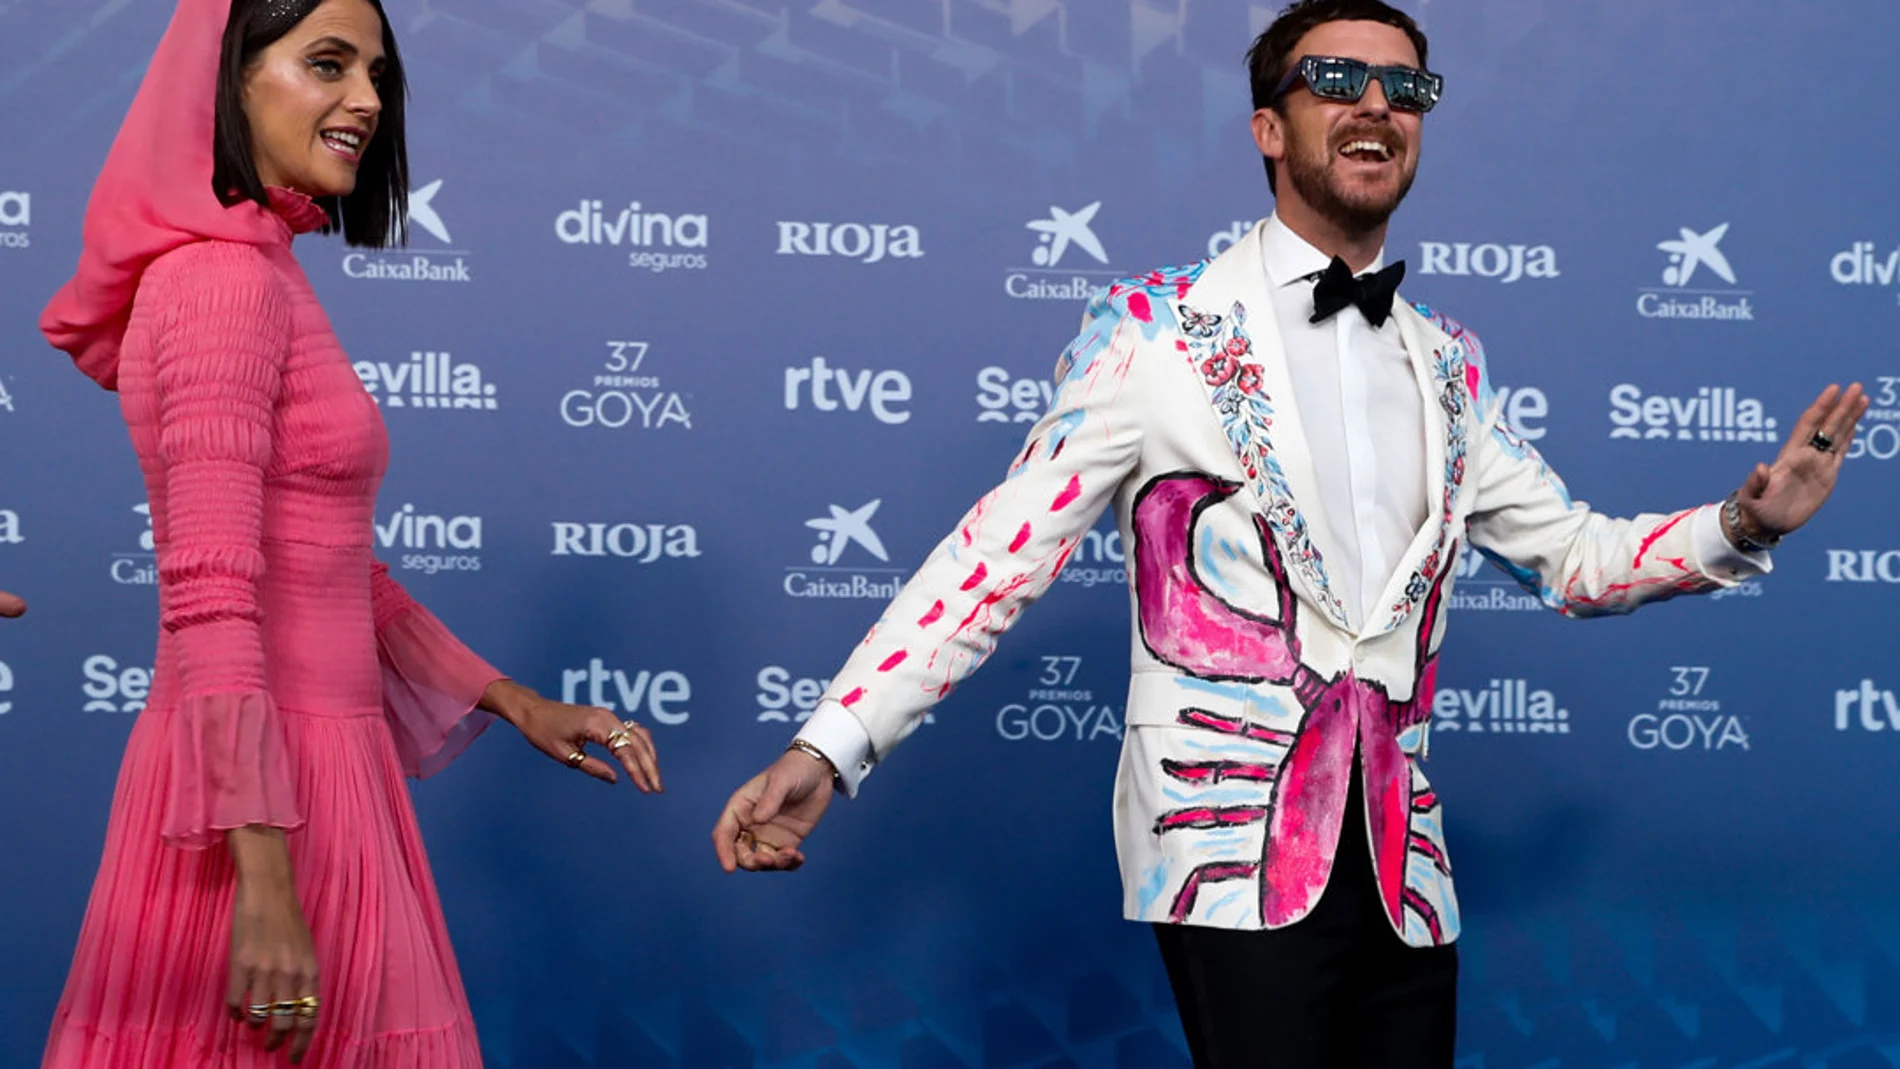 La actriz Macarena Gómez posa con su marido Aldo Comas para los medios gráficos en la alfombra roja de la XXXVII Gala de los Goya